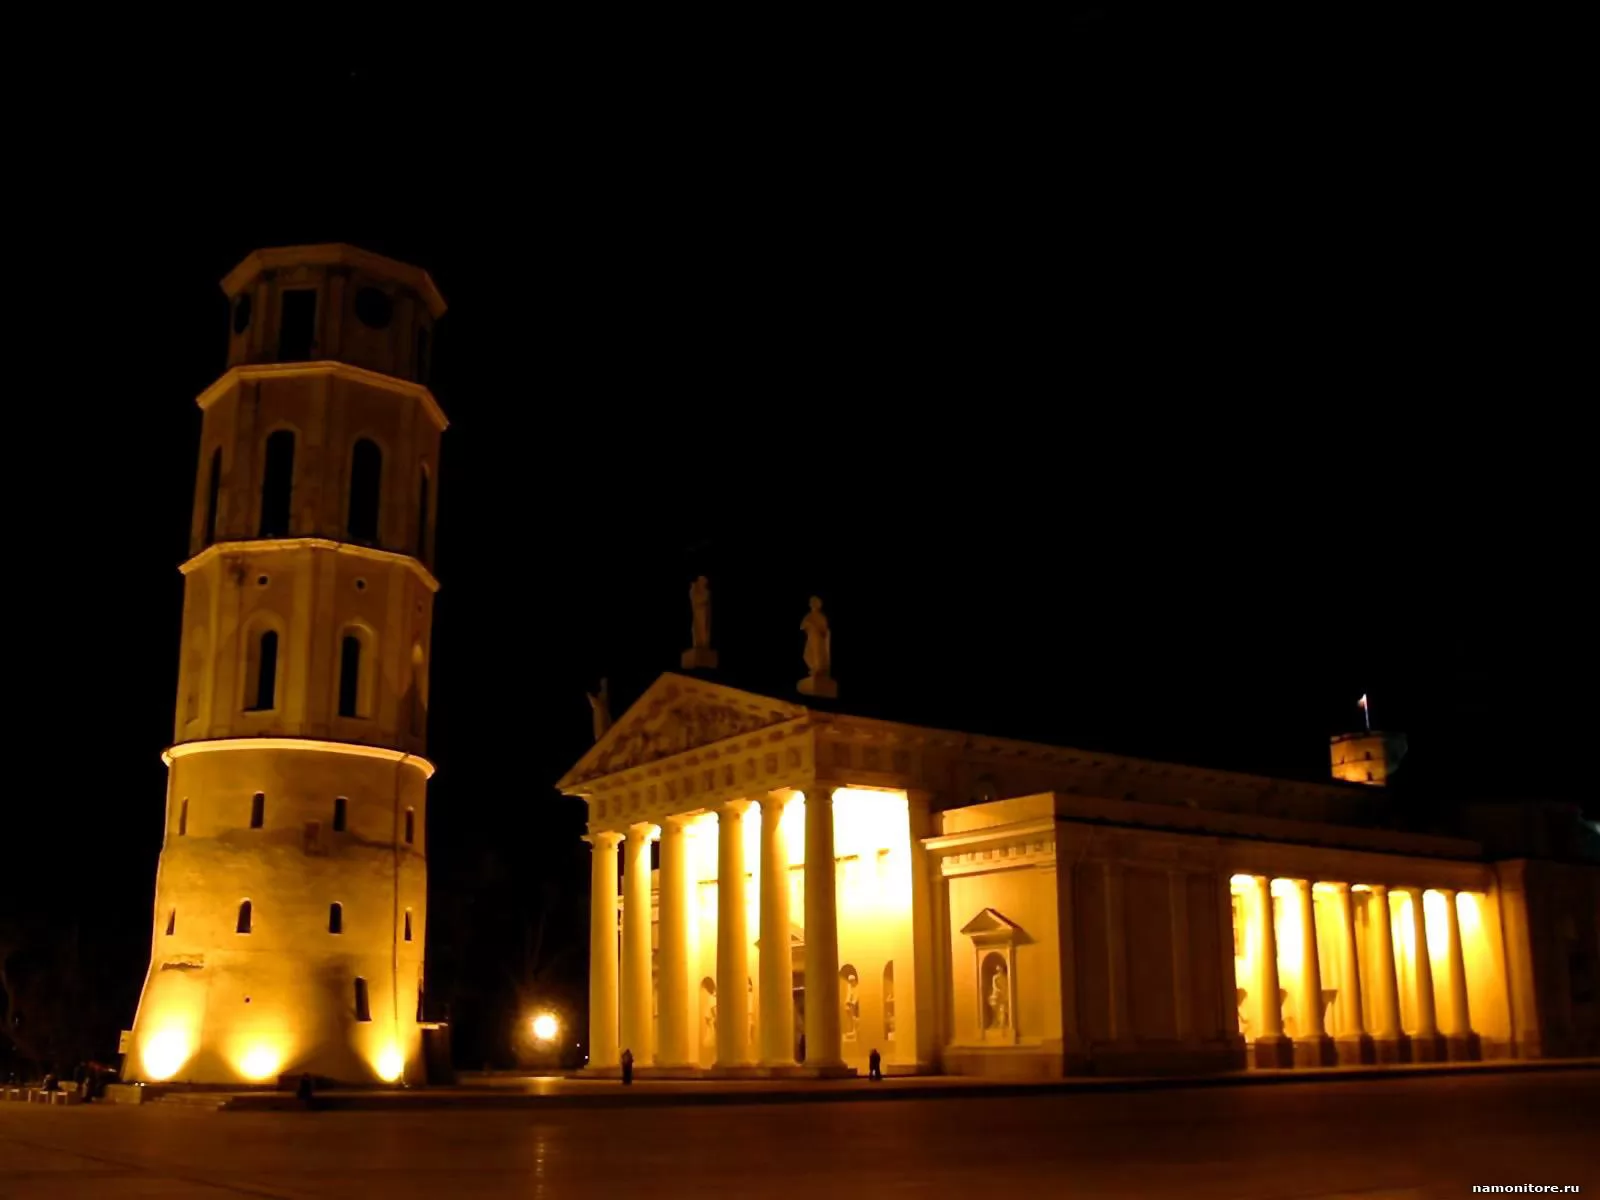 Пизанская башня, античность, города и страны, Европа, Италия, ночь х